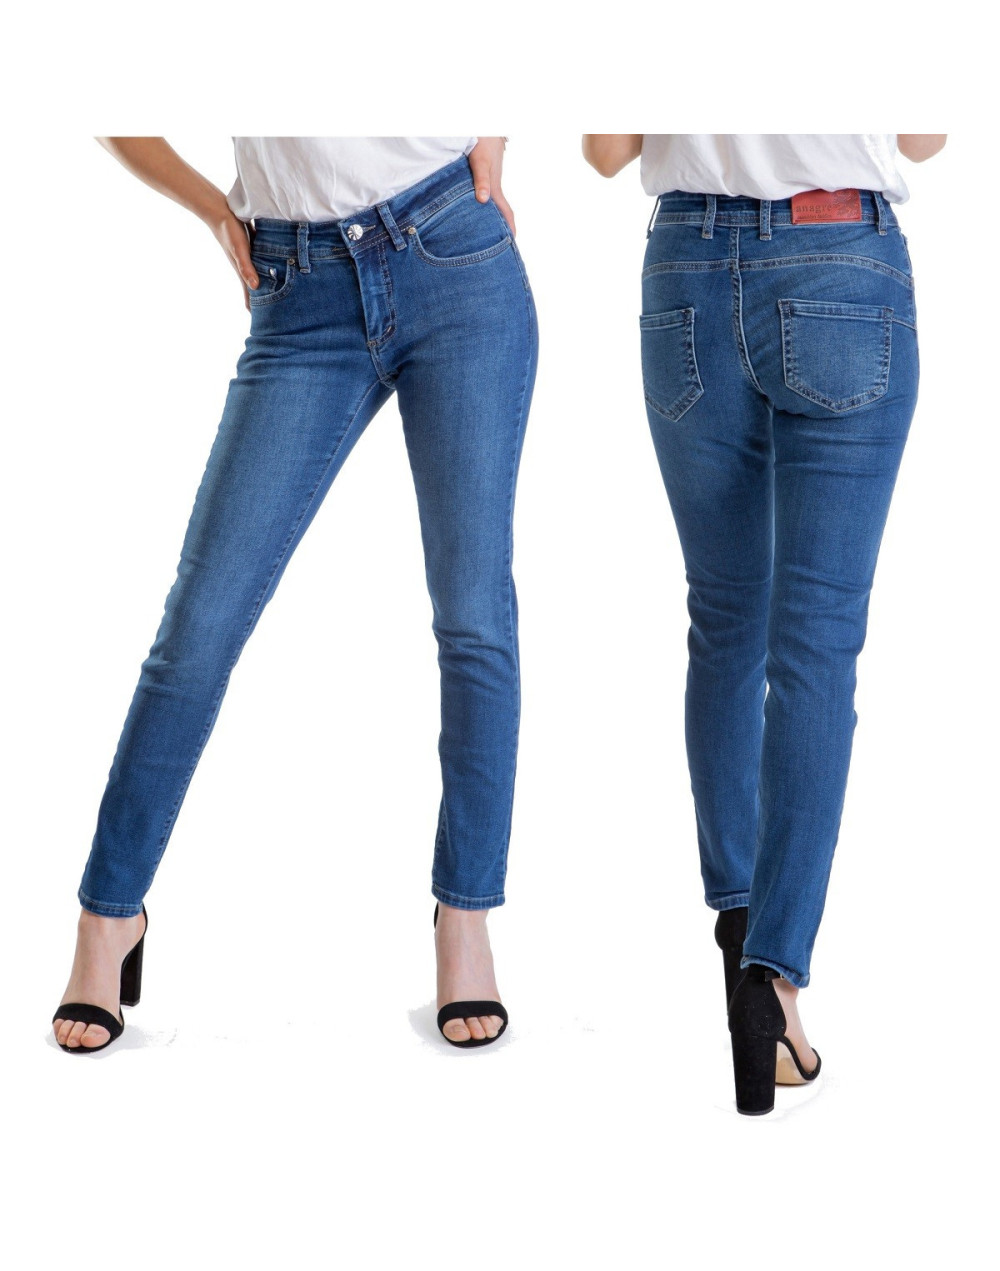 Spodnie damskie jeans, zwężane- Ana dark blue